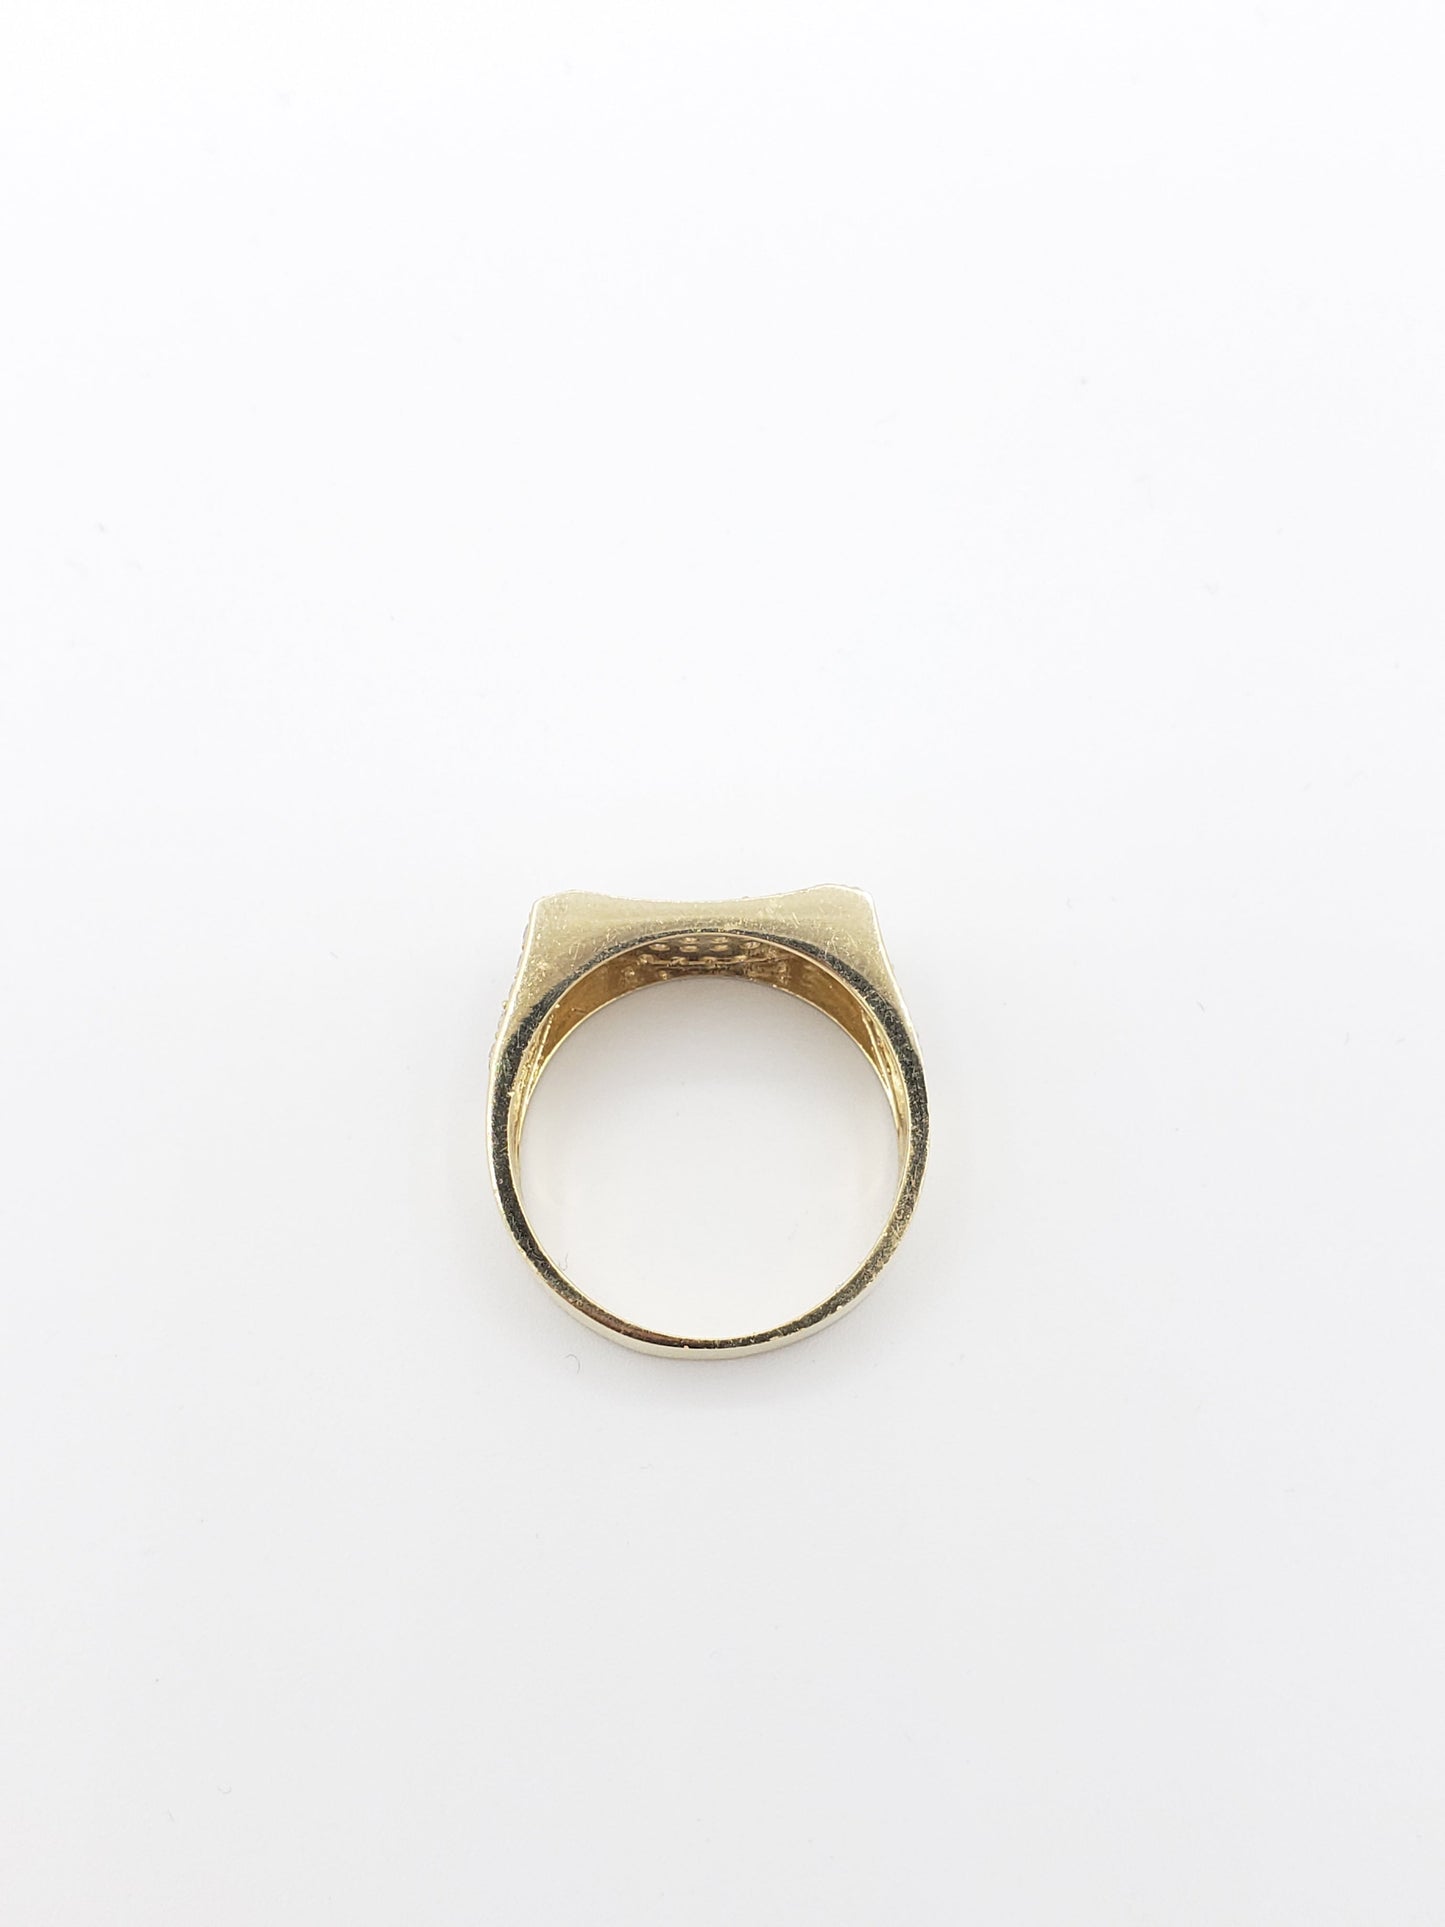 14K Gold- Men's Gold Ring | 7.6 Grams